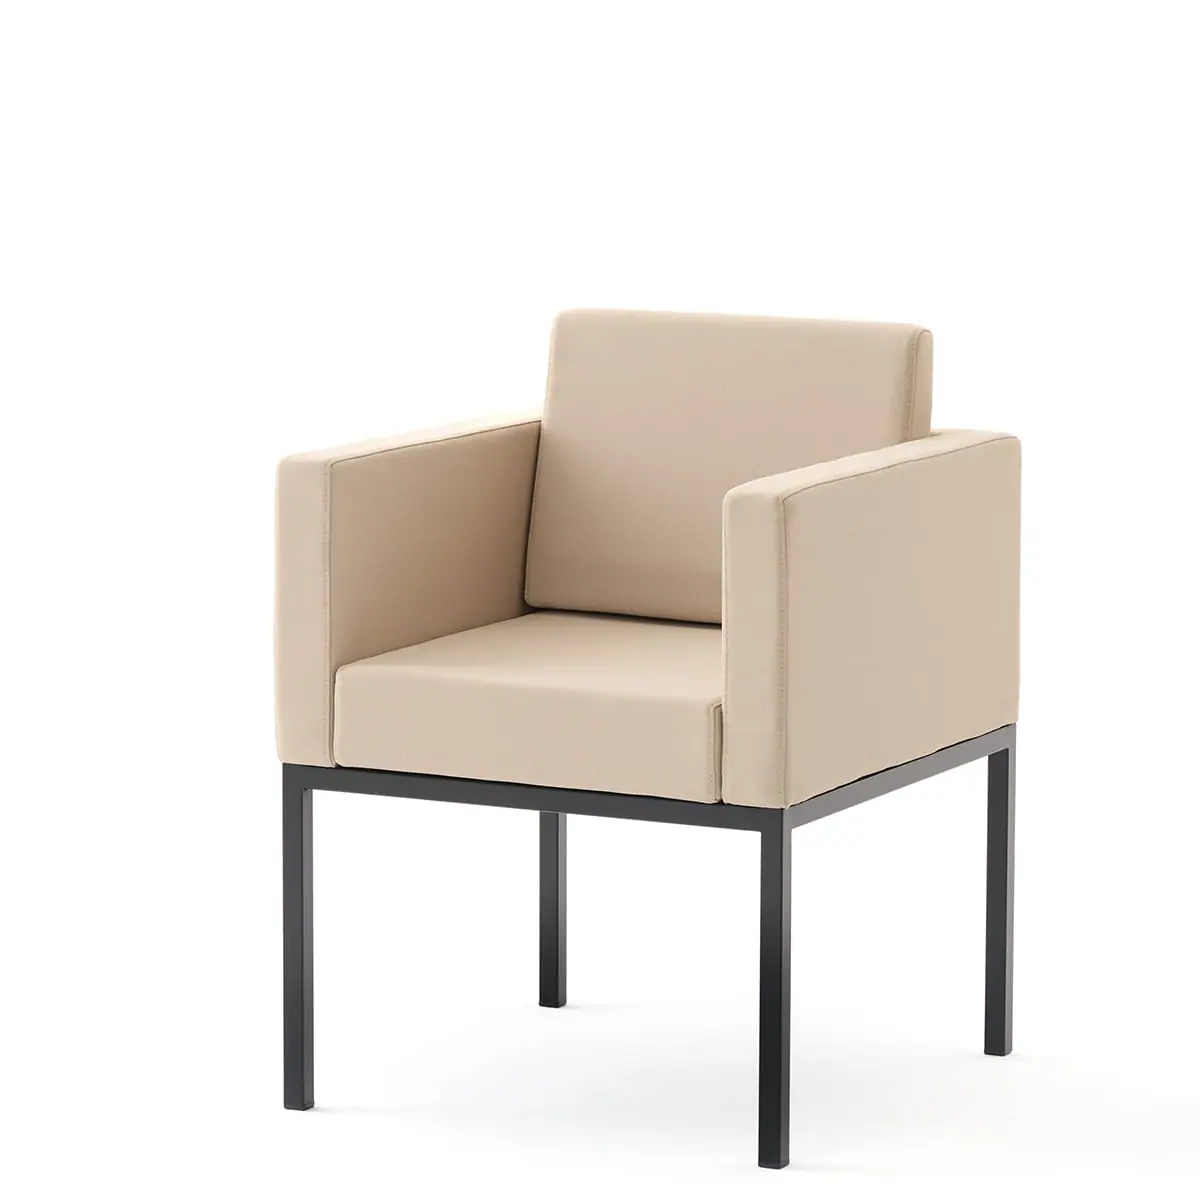 delaoliva-cubik-soft-lounge-seating-003